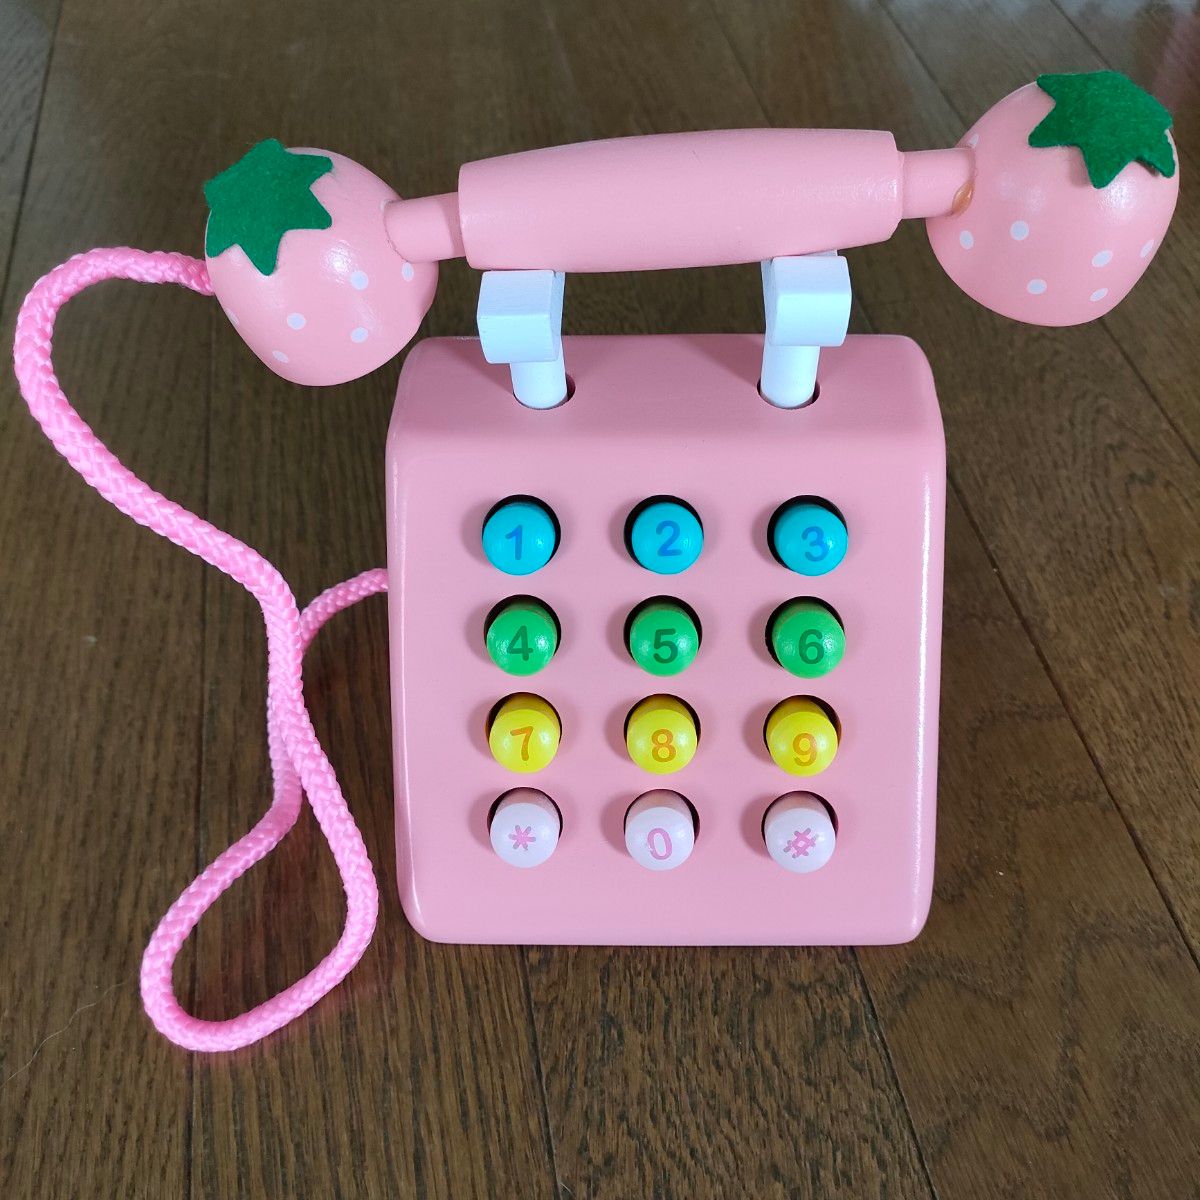 おもちゃ レジセット シミュレーション 木製 かわいい ピンク いちご